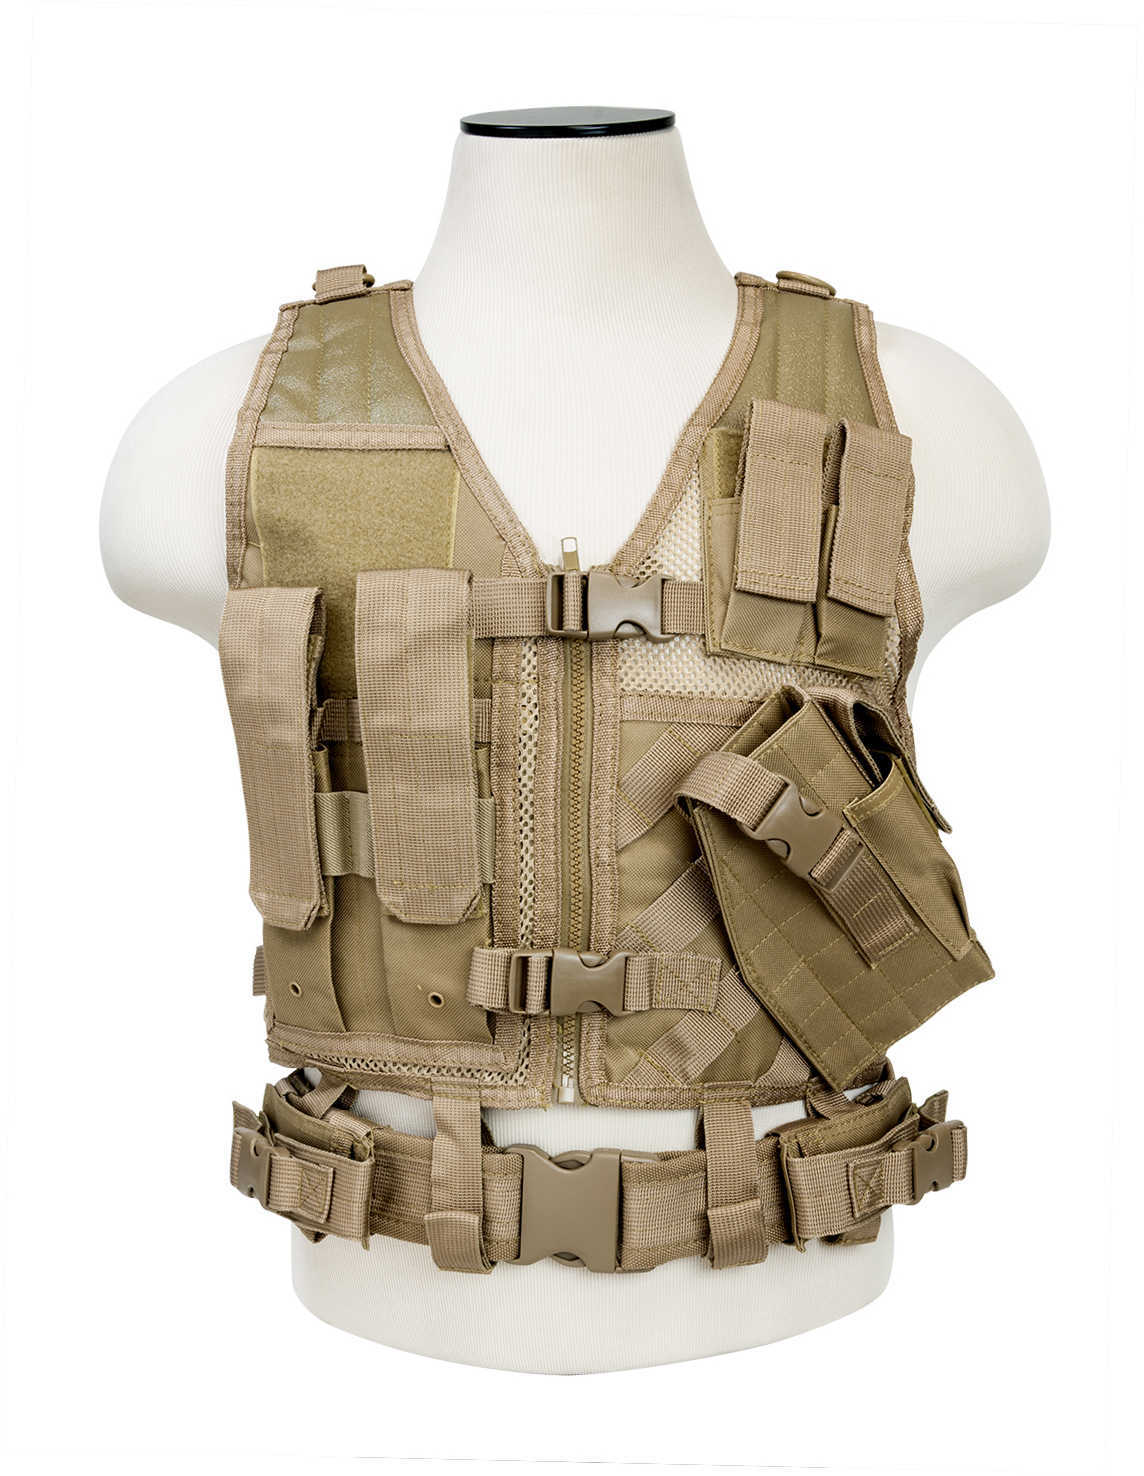 Vism Tactical Vest Tan-XS-Sm